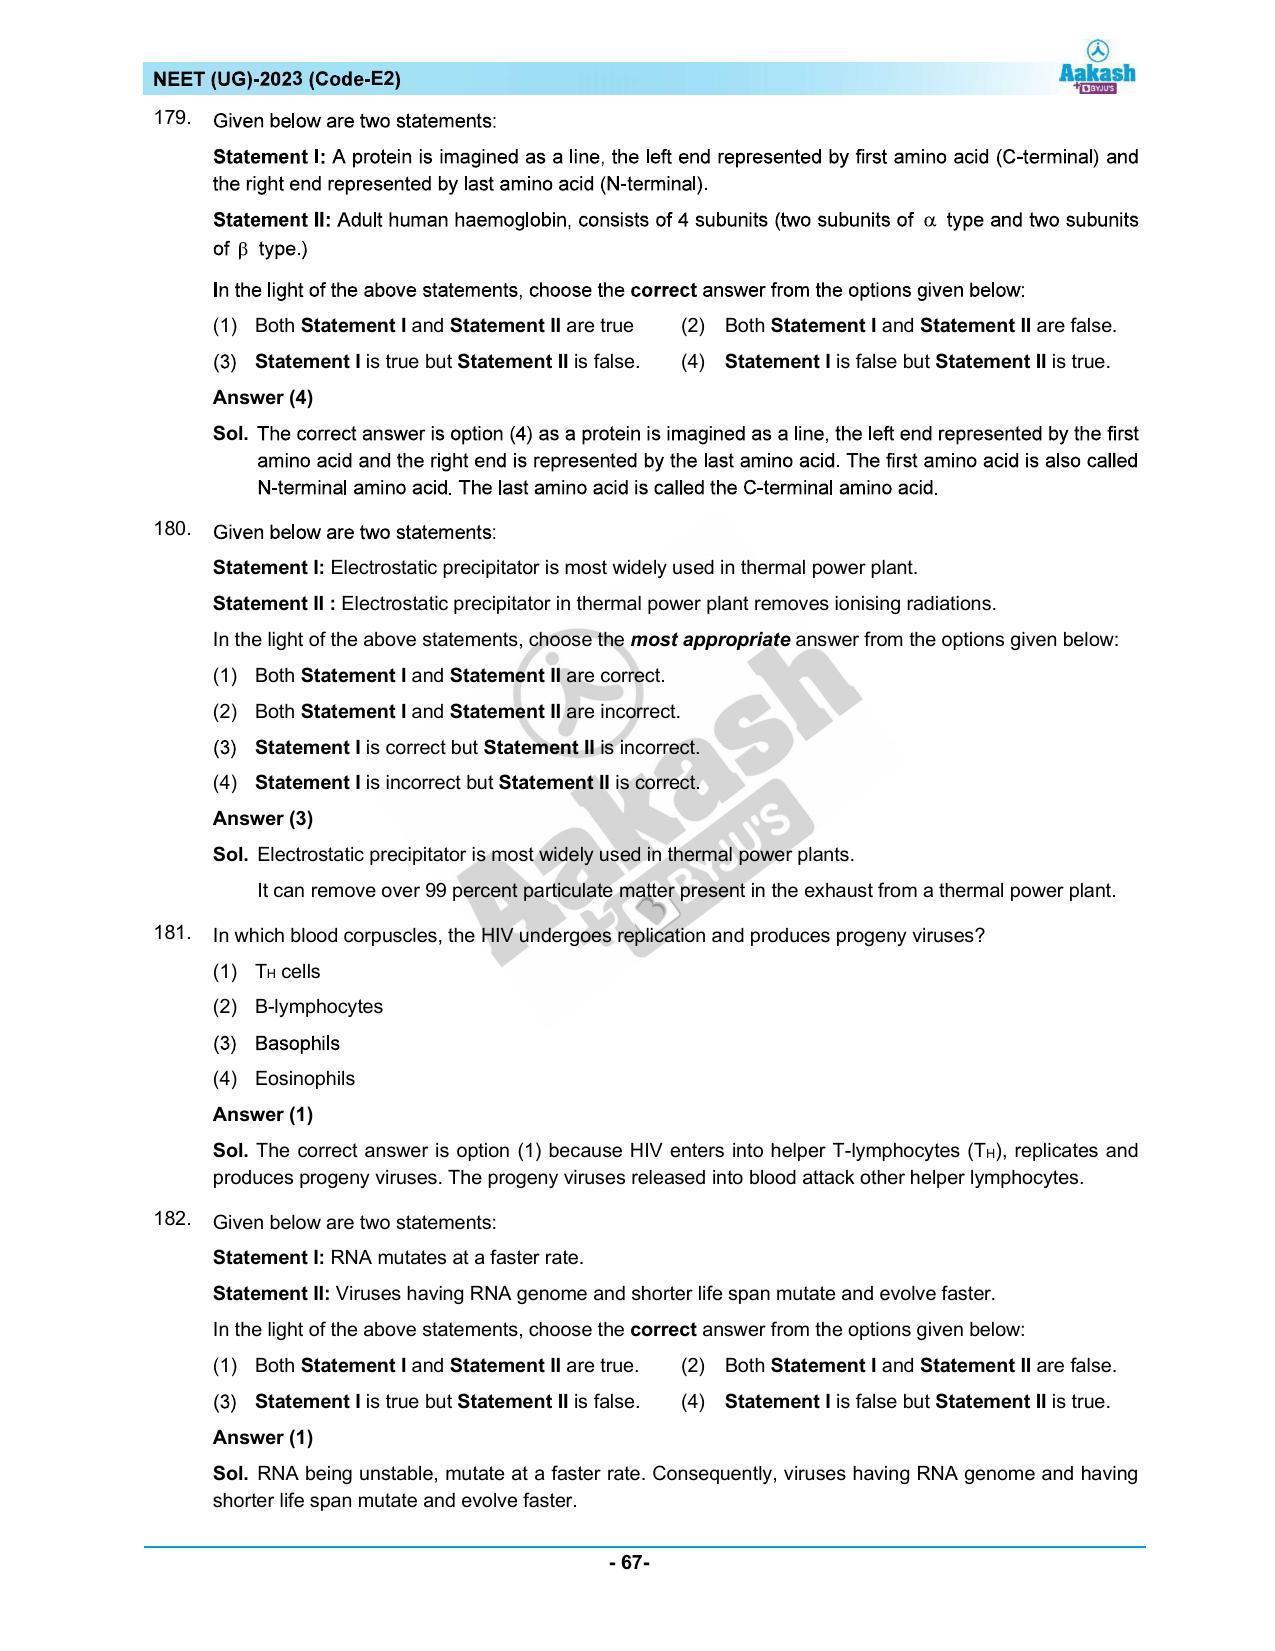 NEET 2023 Question Paper E2 - Page 67